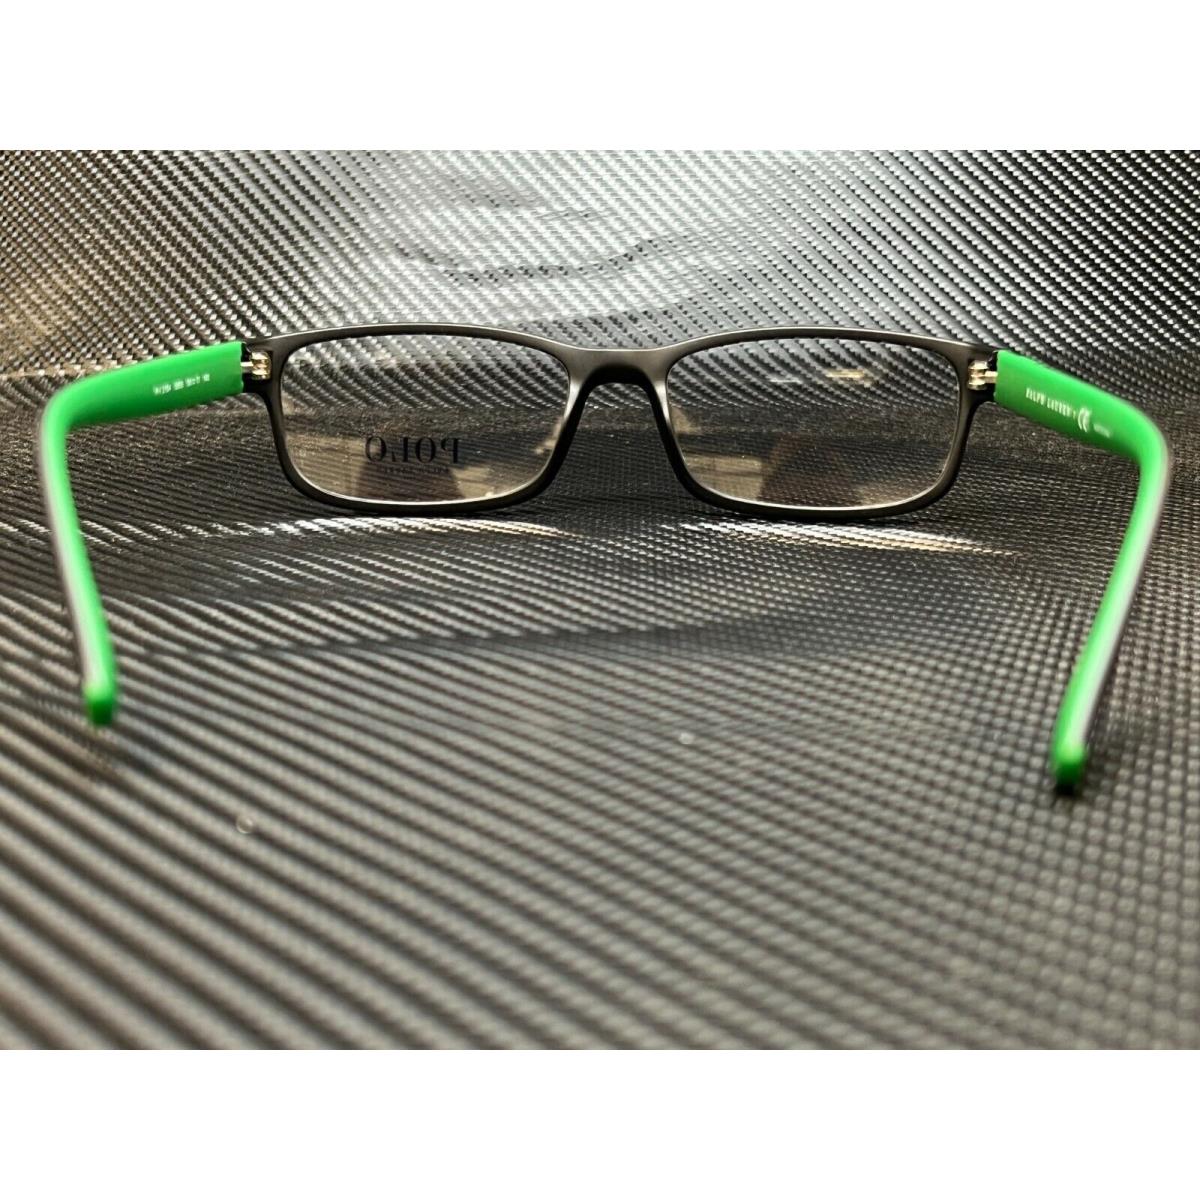 Ralph Lauren eyeglasses  - Frame: Black 2